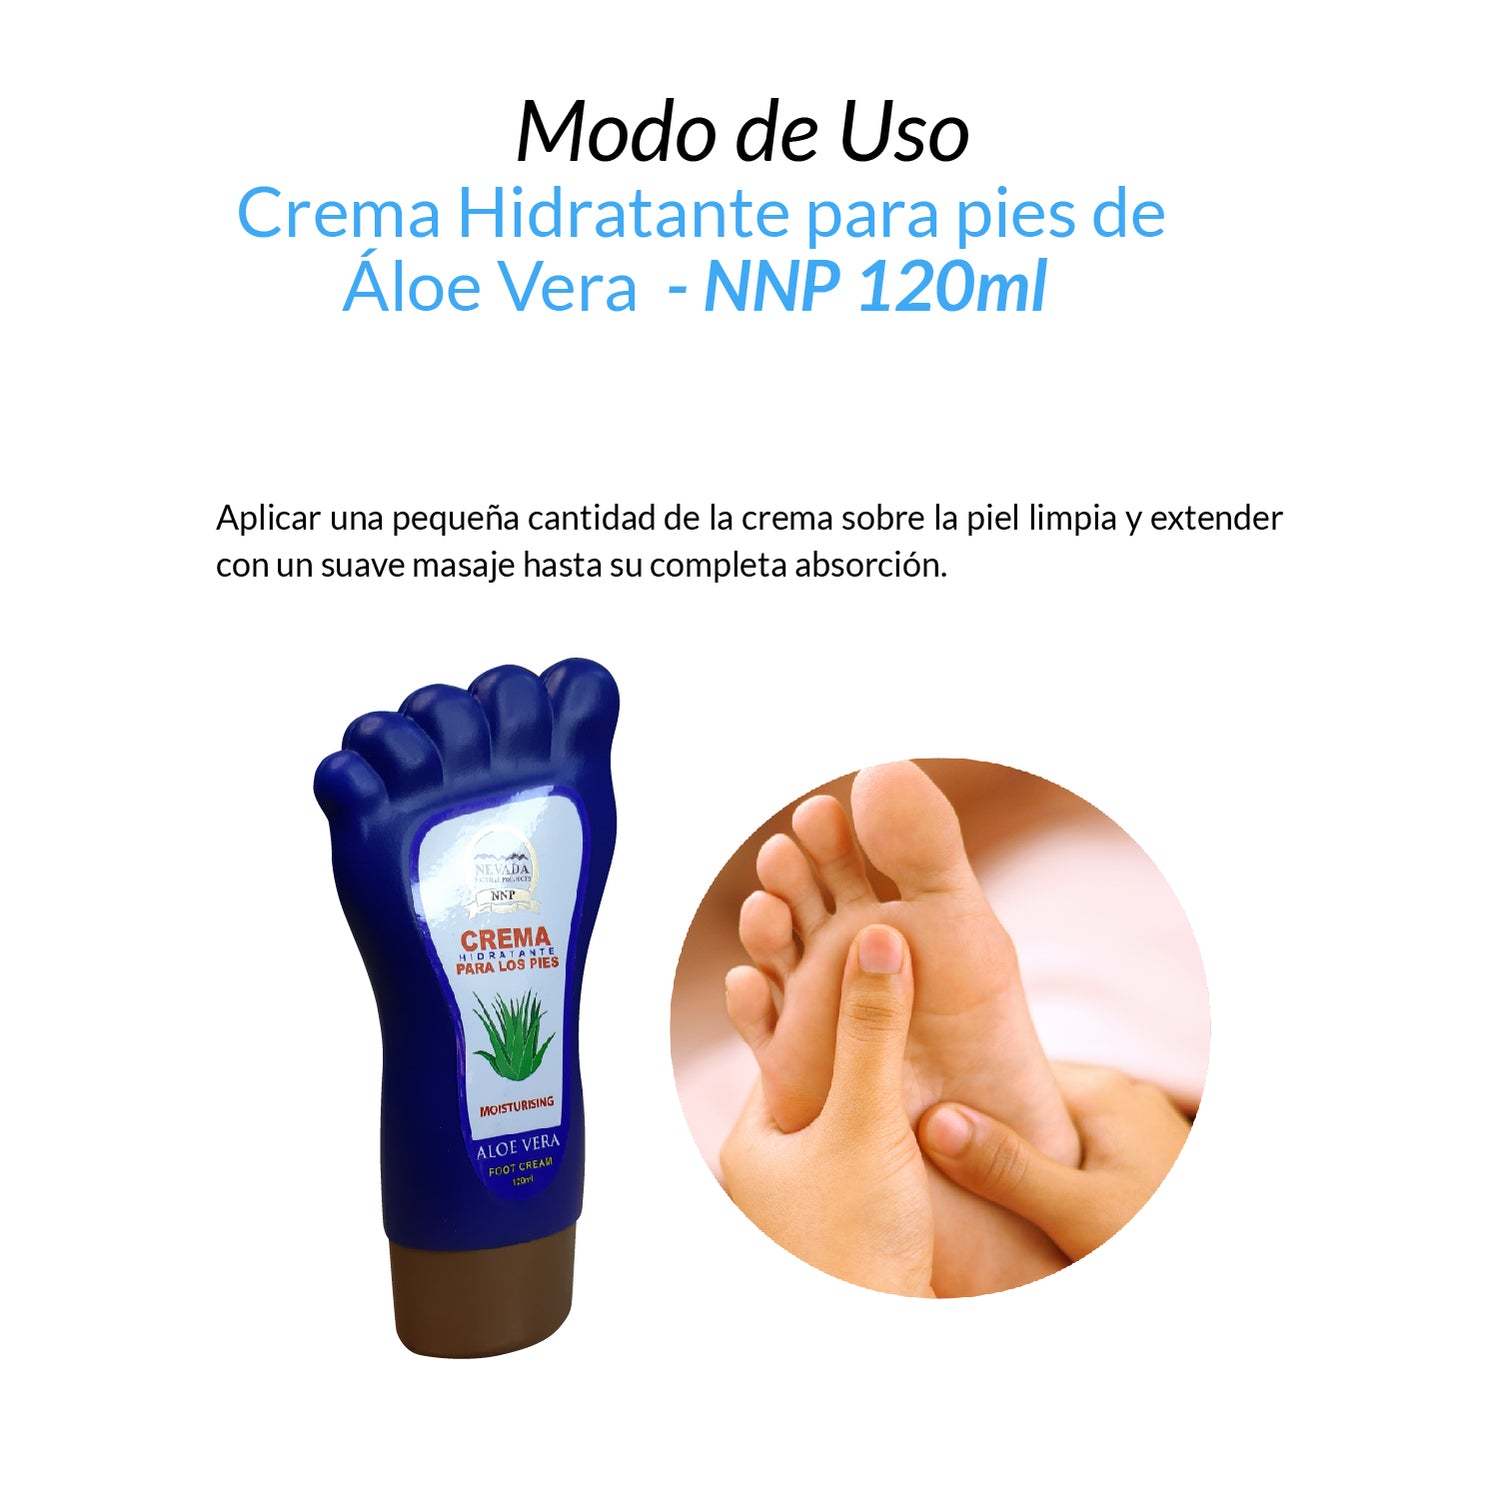 Crema Hidratante para pies de Áloe Vera - NNP 120ml